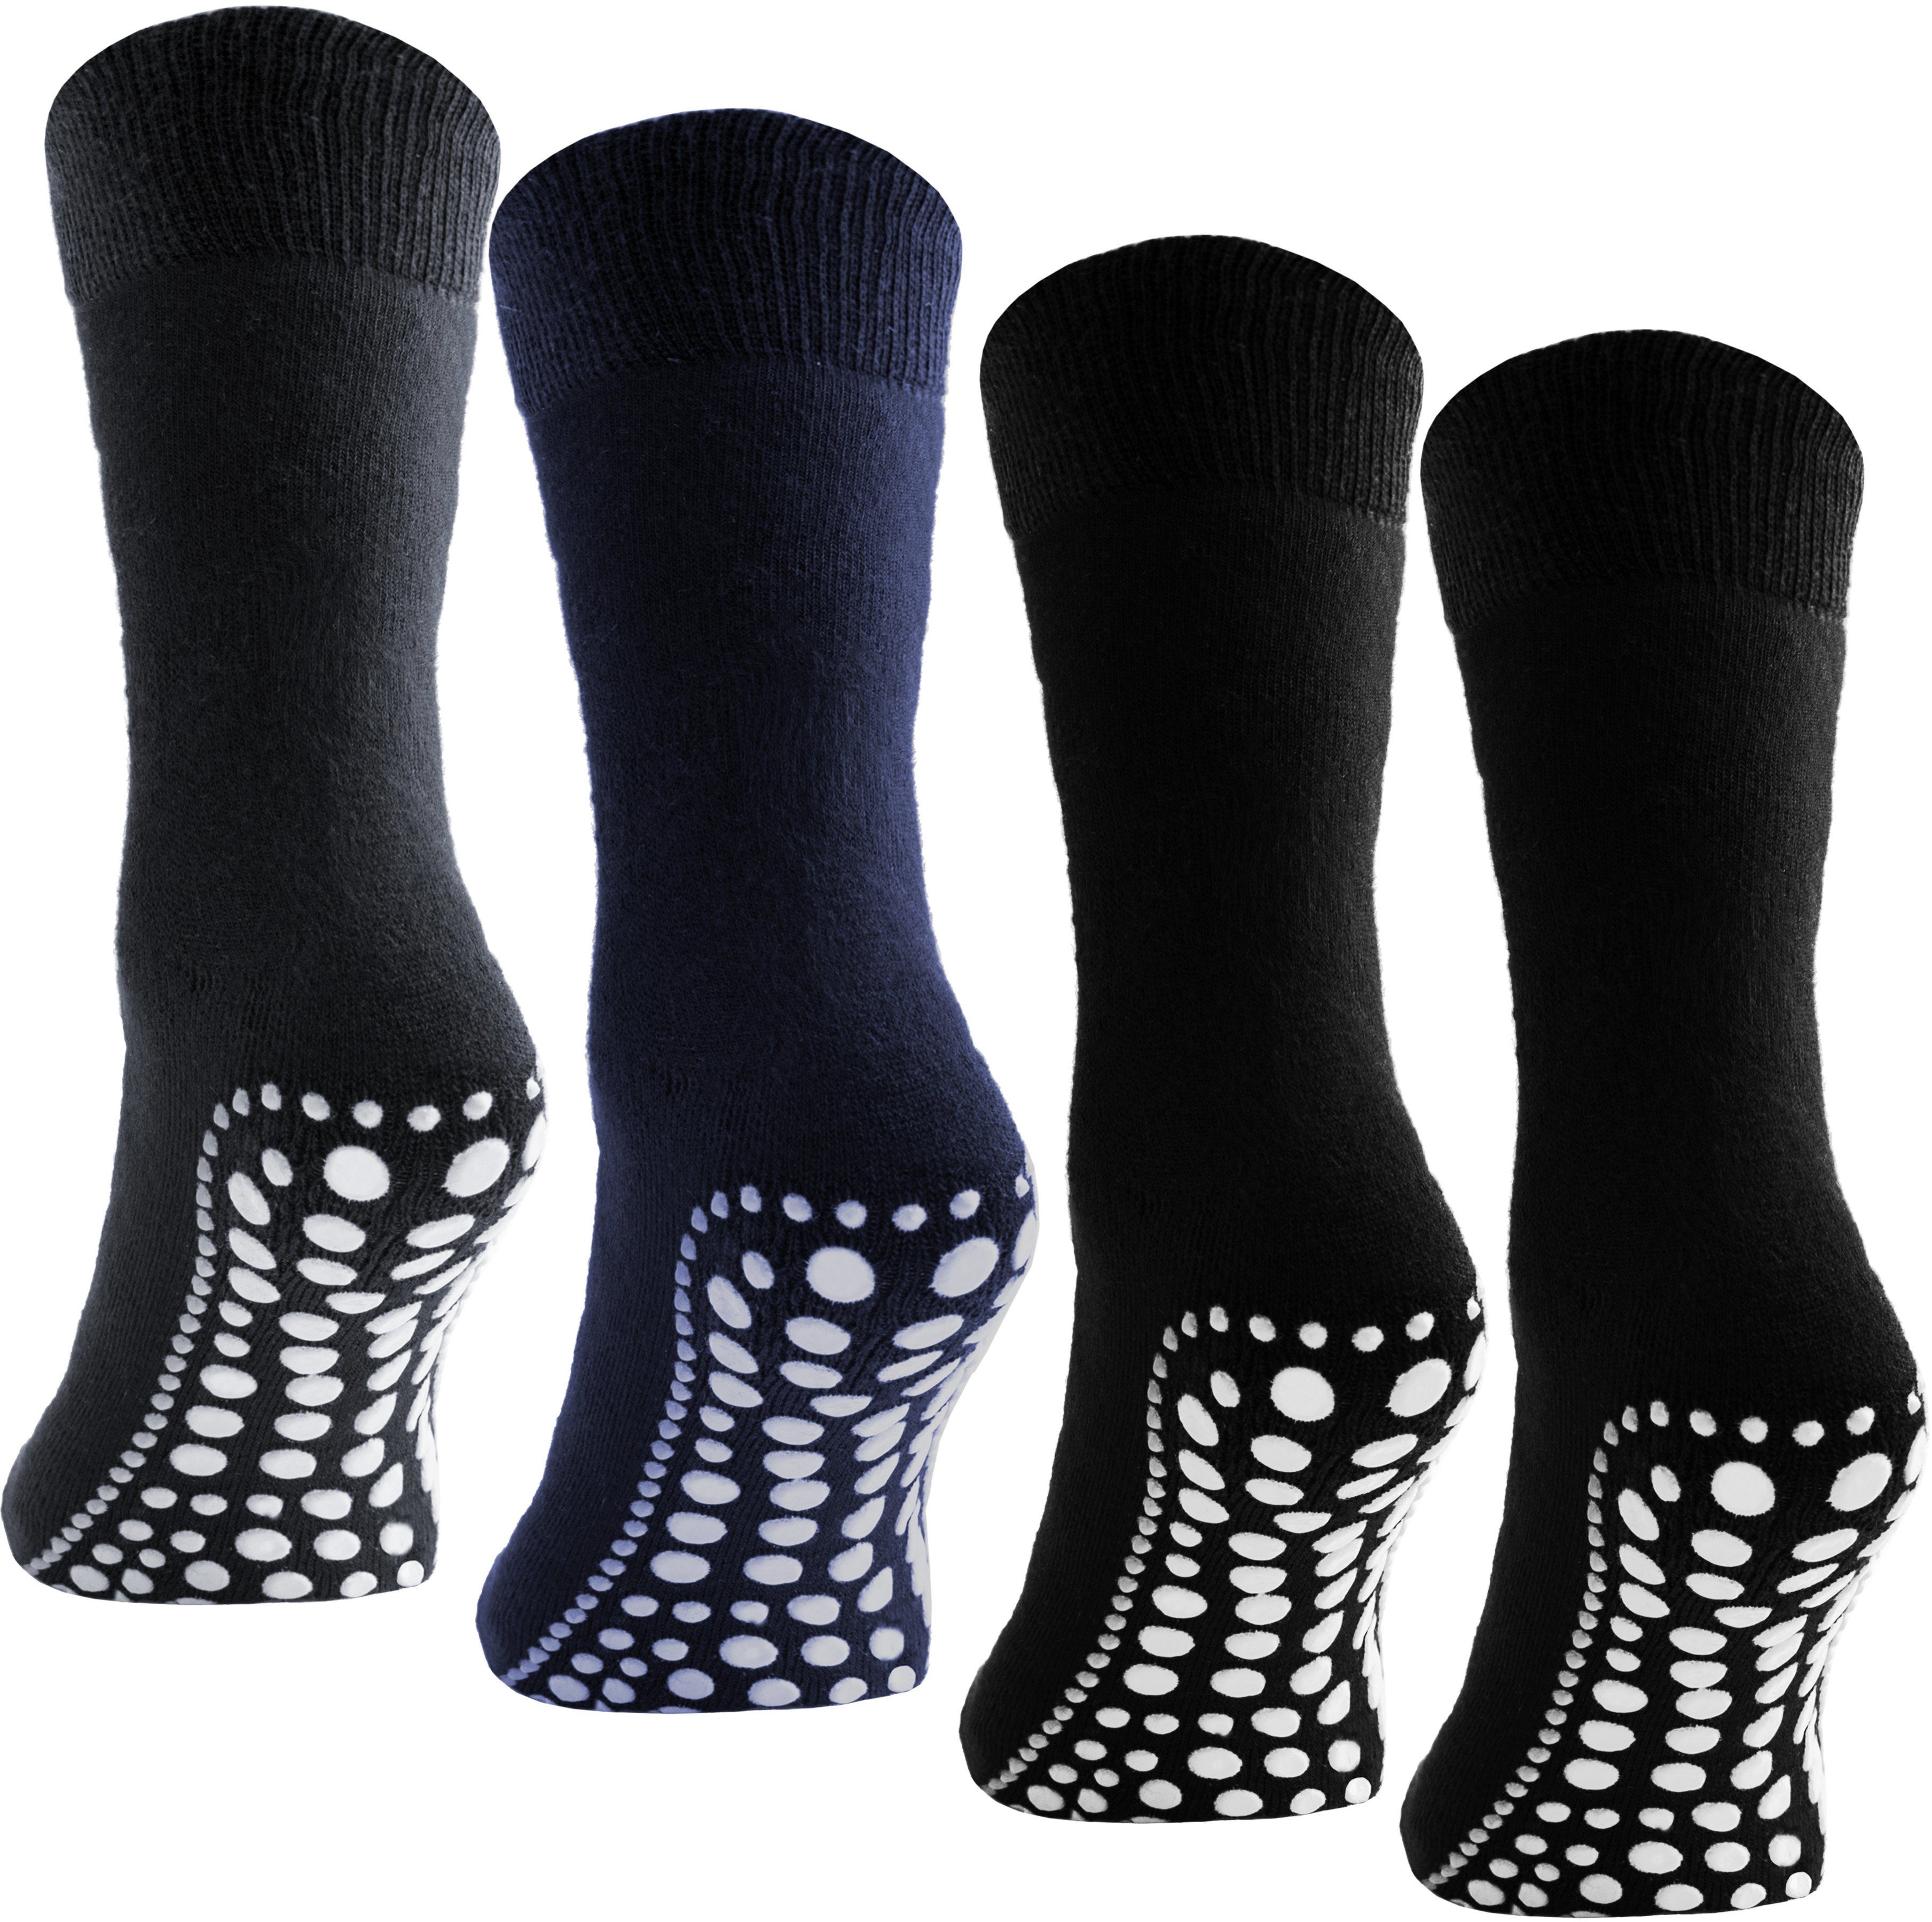 BRUBAKER ABS-Socken Unisex Haussocken (4-Paar, Baumwolle) Anti Rutsch Socken für Damen und Herren Schwarz, Grau und Blau